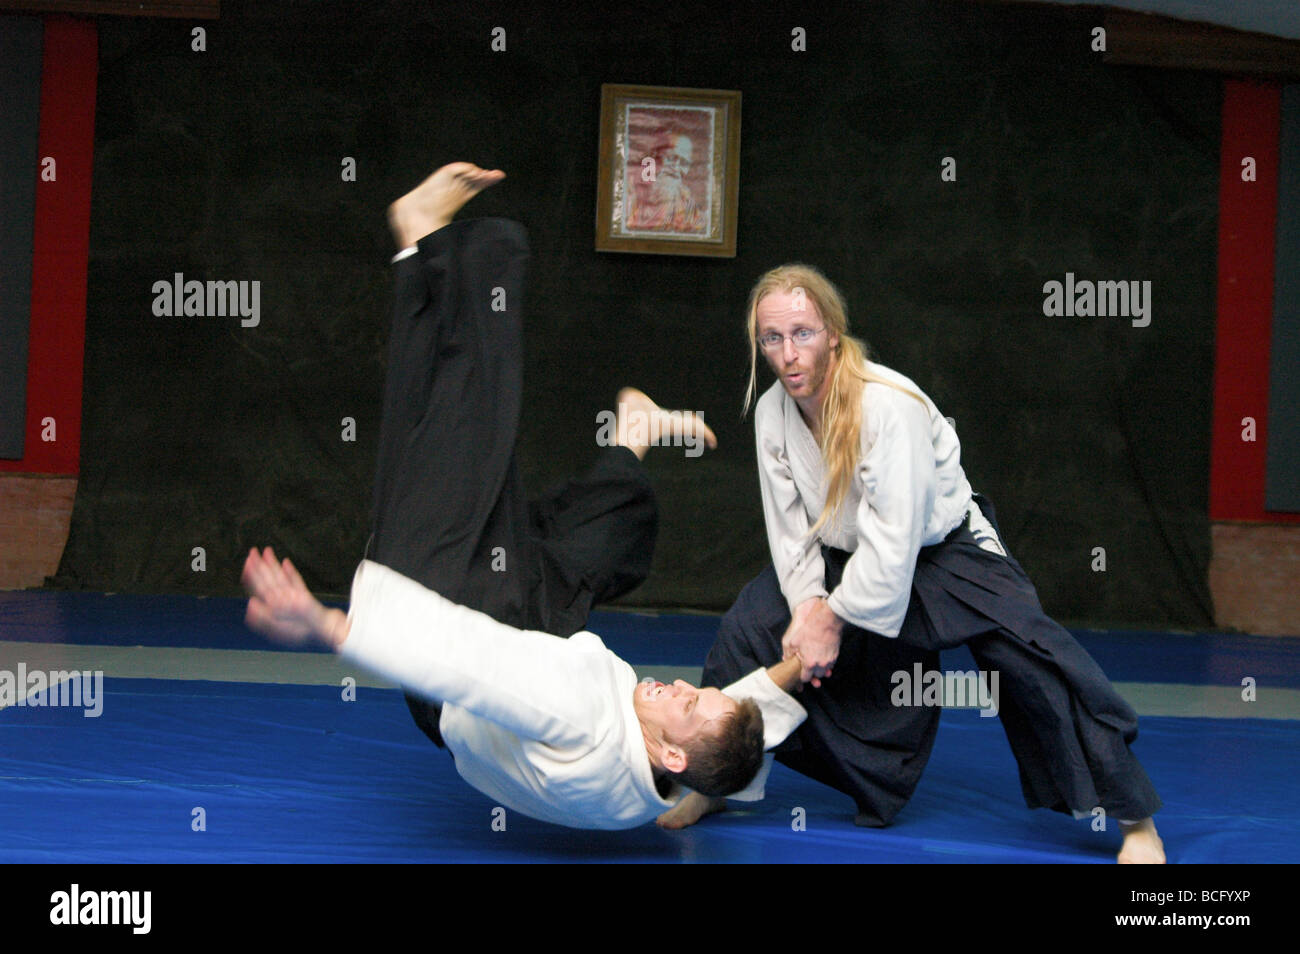 Deux hommes dans un aikido contact sport compétition Banque D'Images